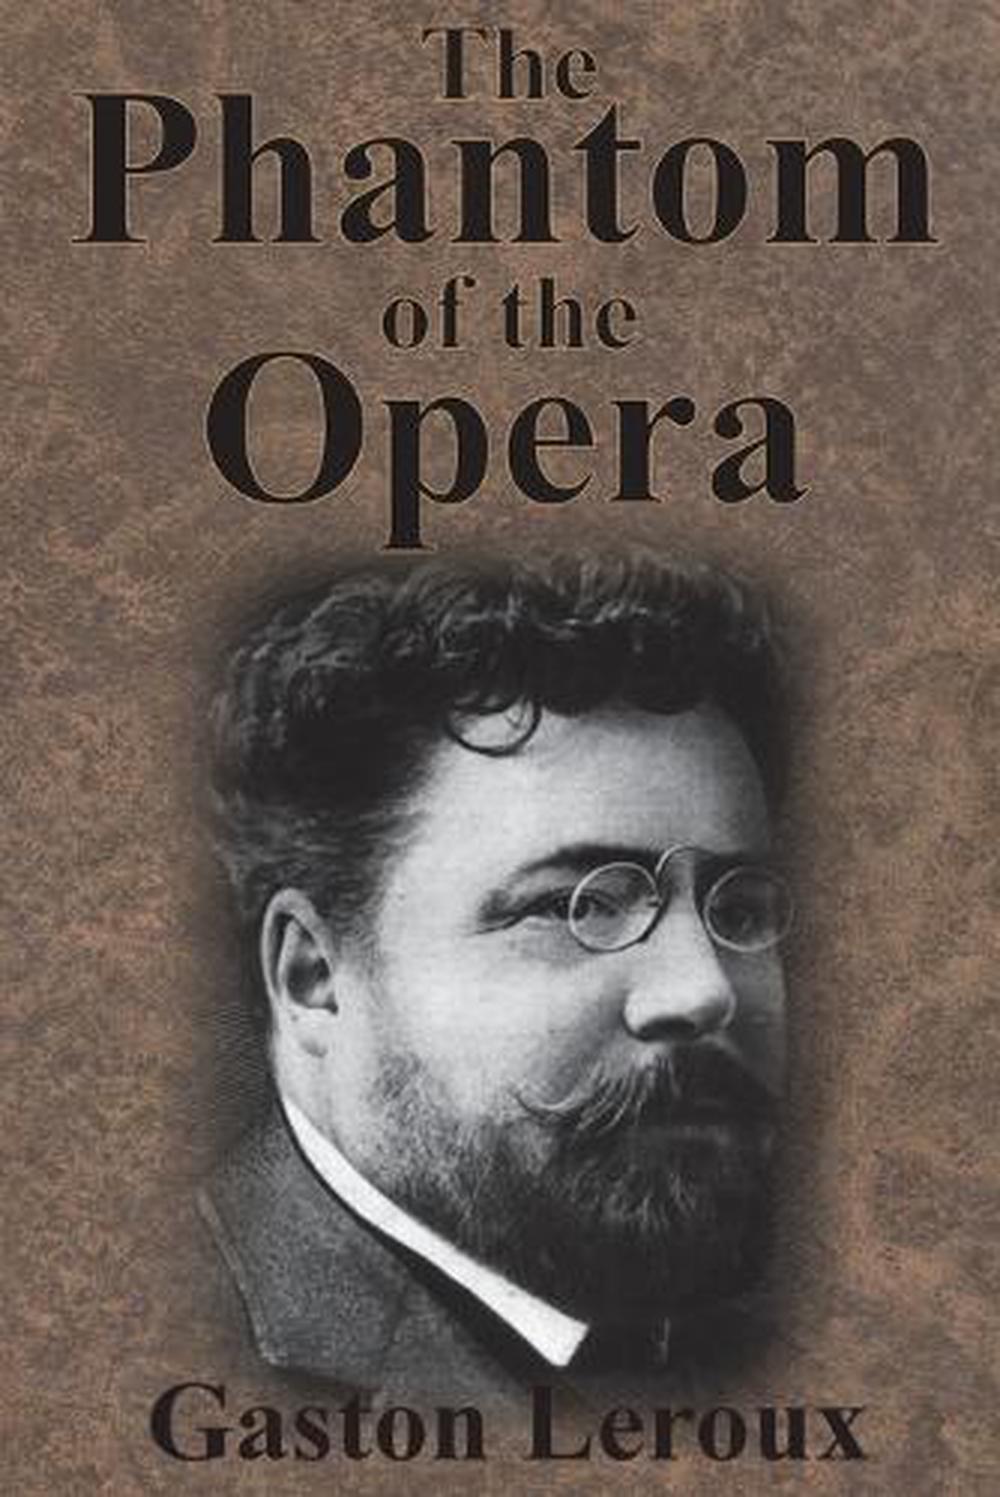 description of the phantom of the opera book